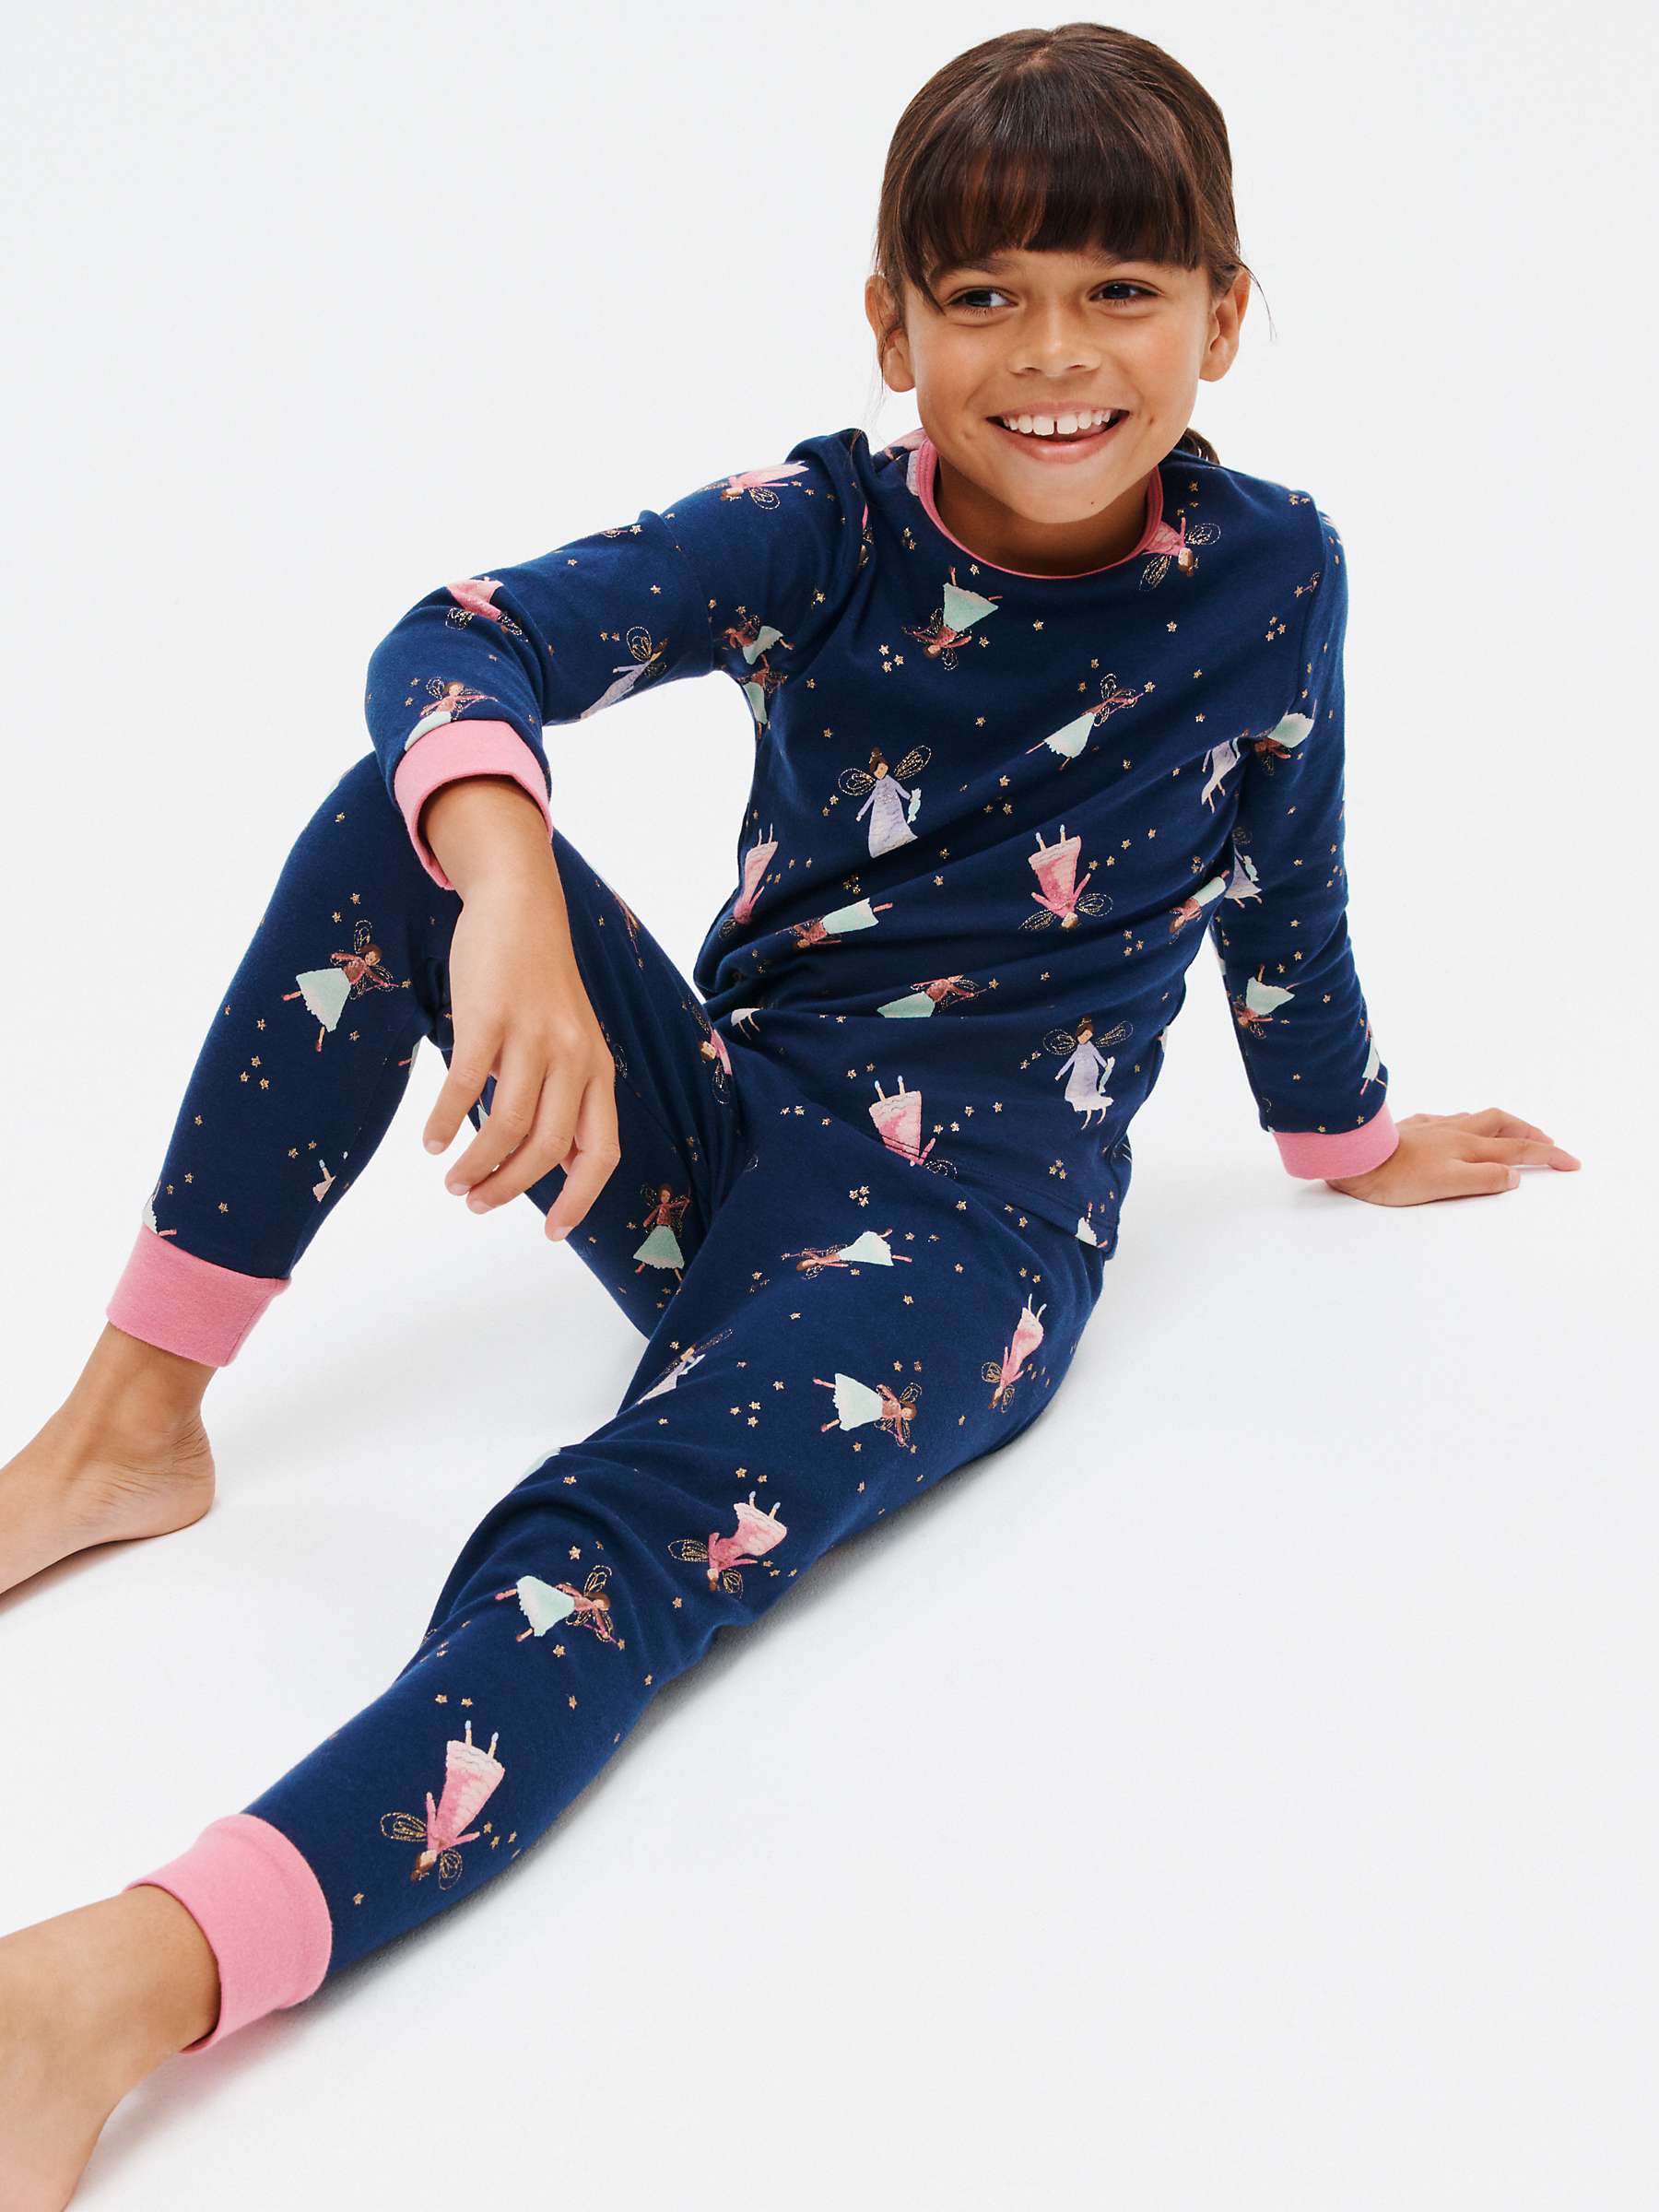 Buy John Lewis Kids' Fairy Print Pyjamas, Pack of 2, Blue/Multi Online at johnlewis.com